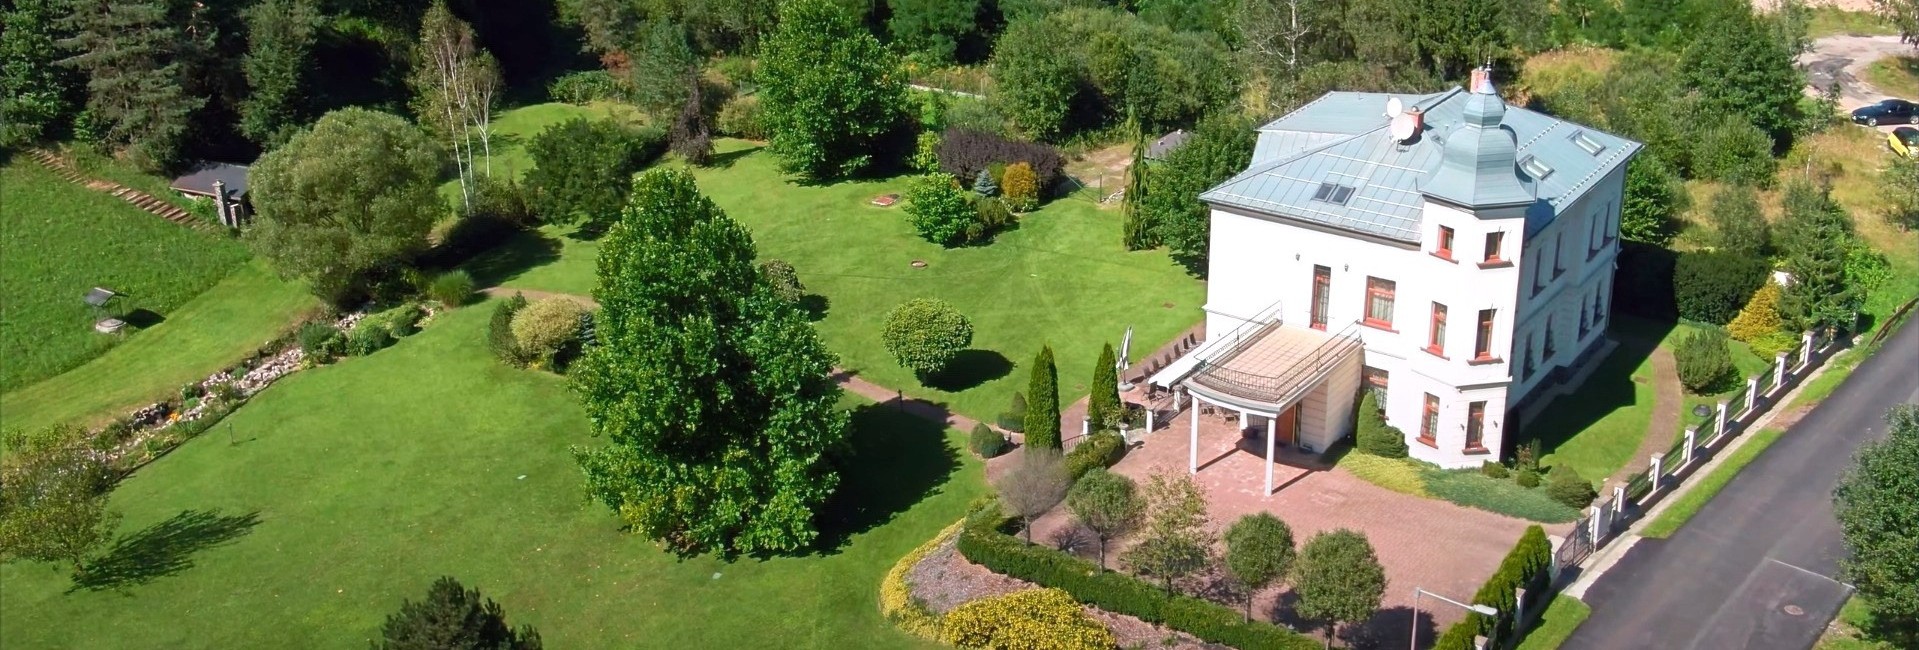 Airshot of Villa Andrassy with its beautiful park in Podbrezova, Slovakia